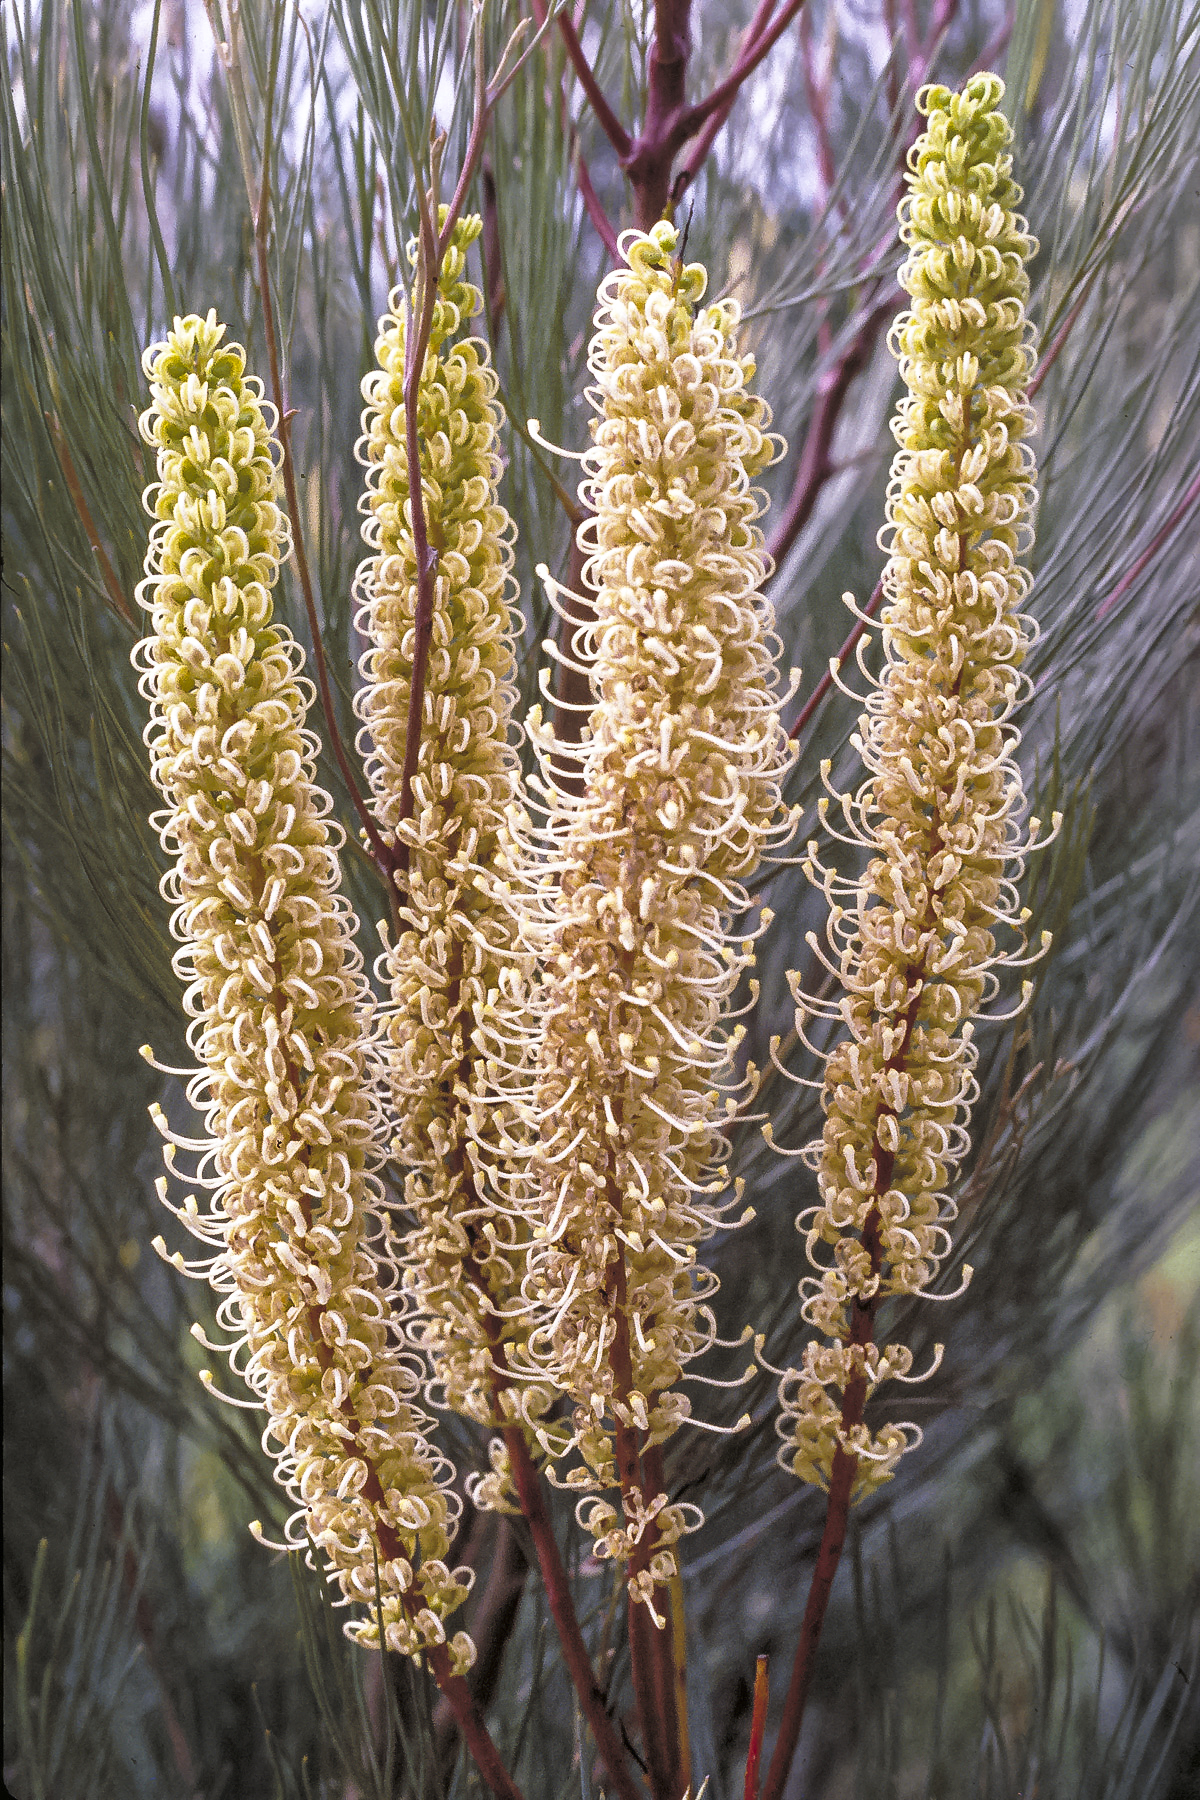 Flower stalks of Grevillea candelabroides